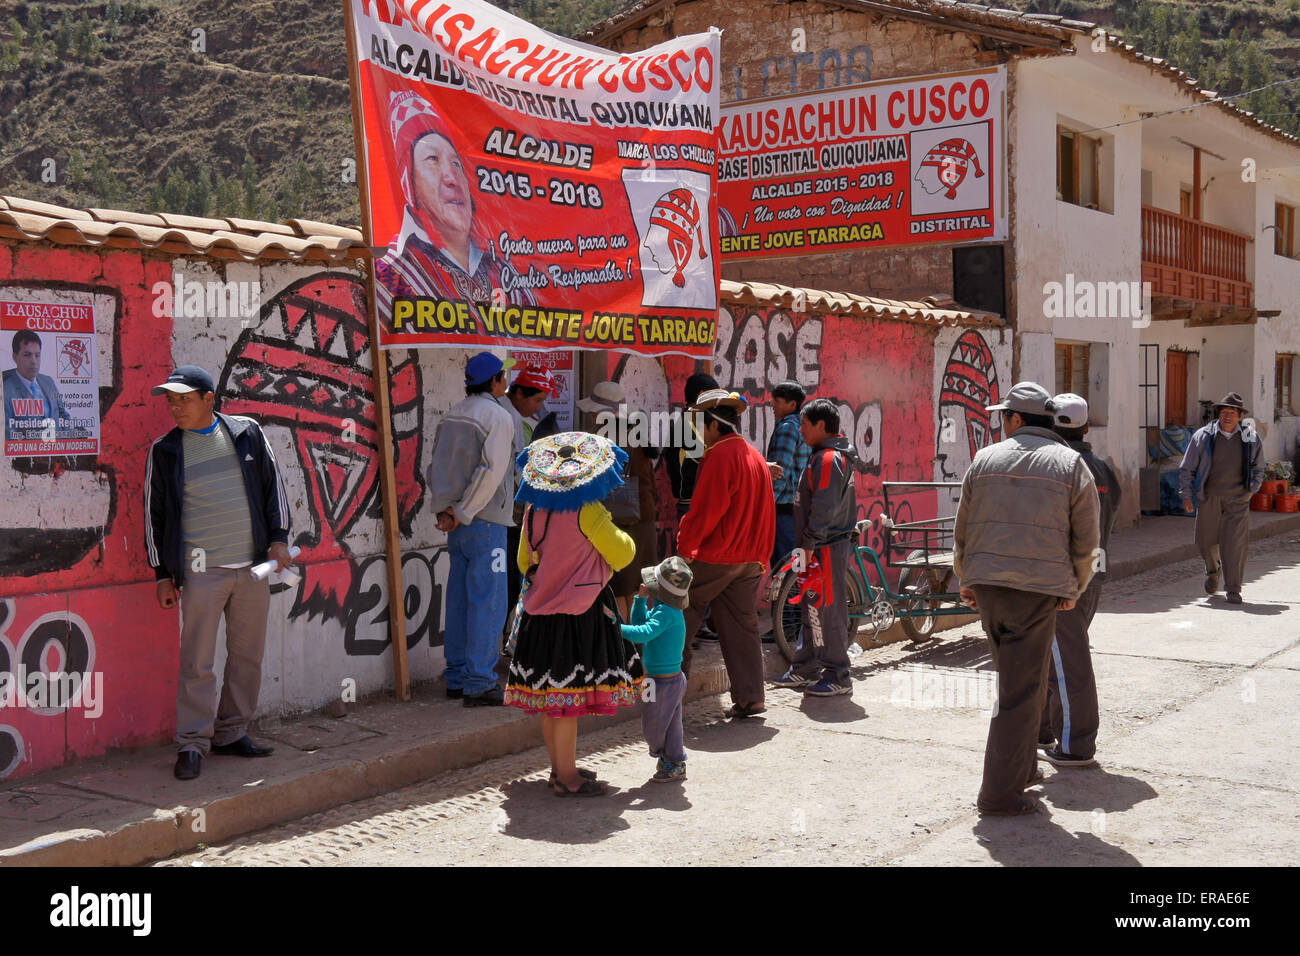 La gente en la calle, con carteles y pancartas políticas, Quiquijana (cerca  de Cuzco), Perú Fotografía de stock - Alamy